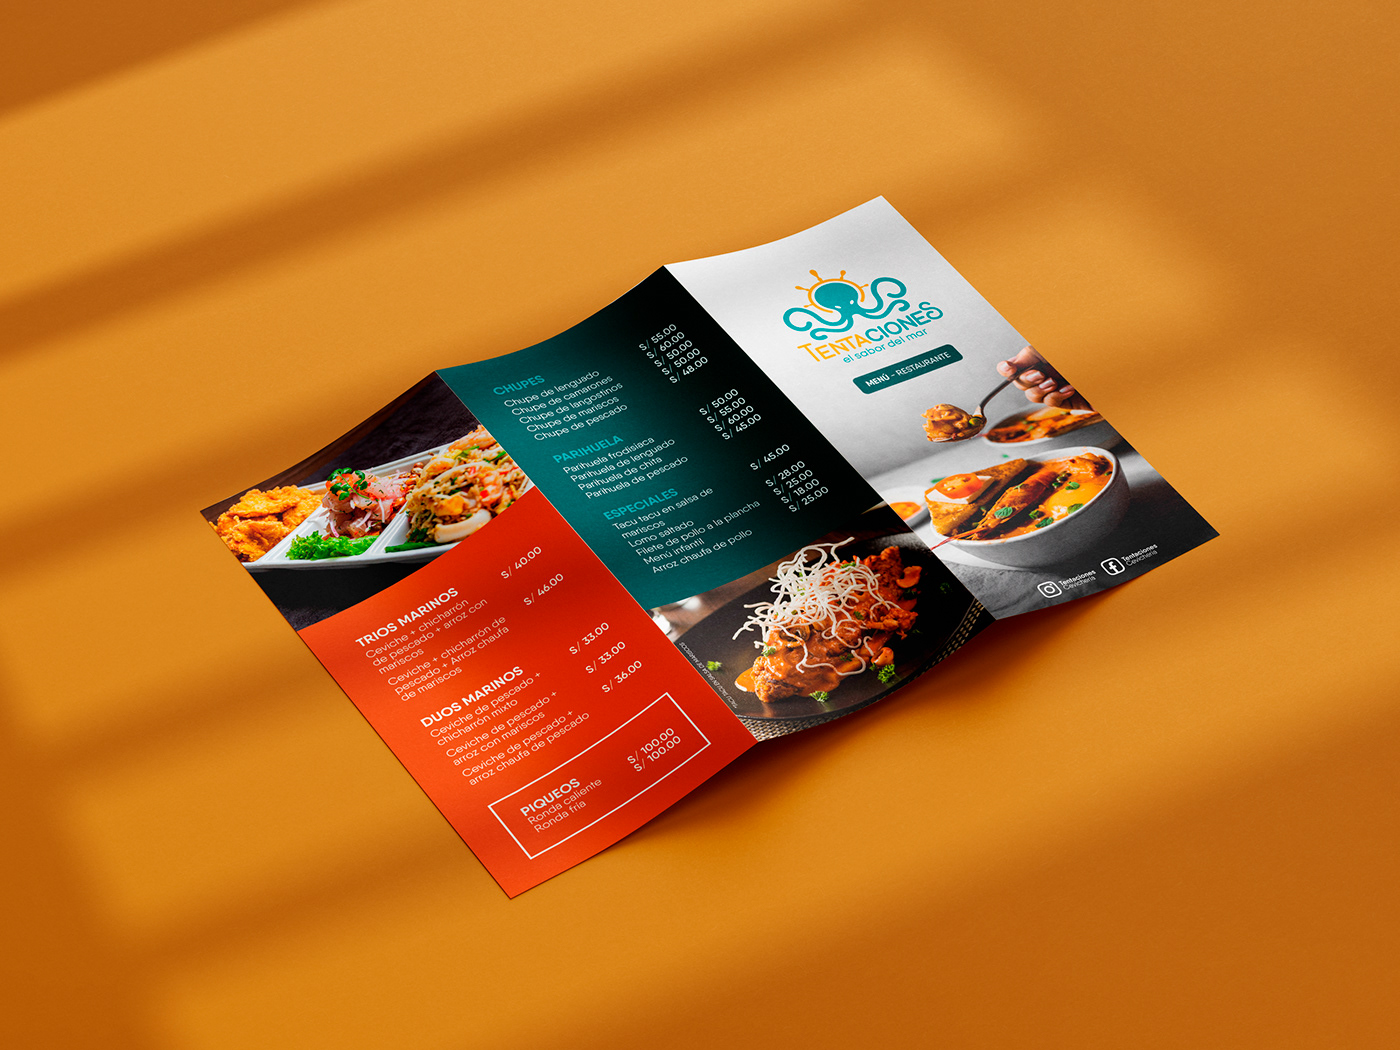 restaurantes Food  comida Illustrator photoshop InDesign editorial design Graphic Designer marca